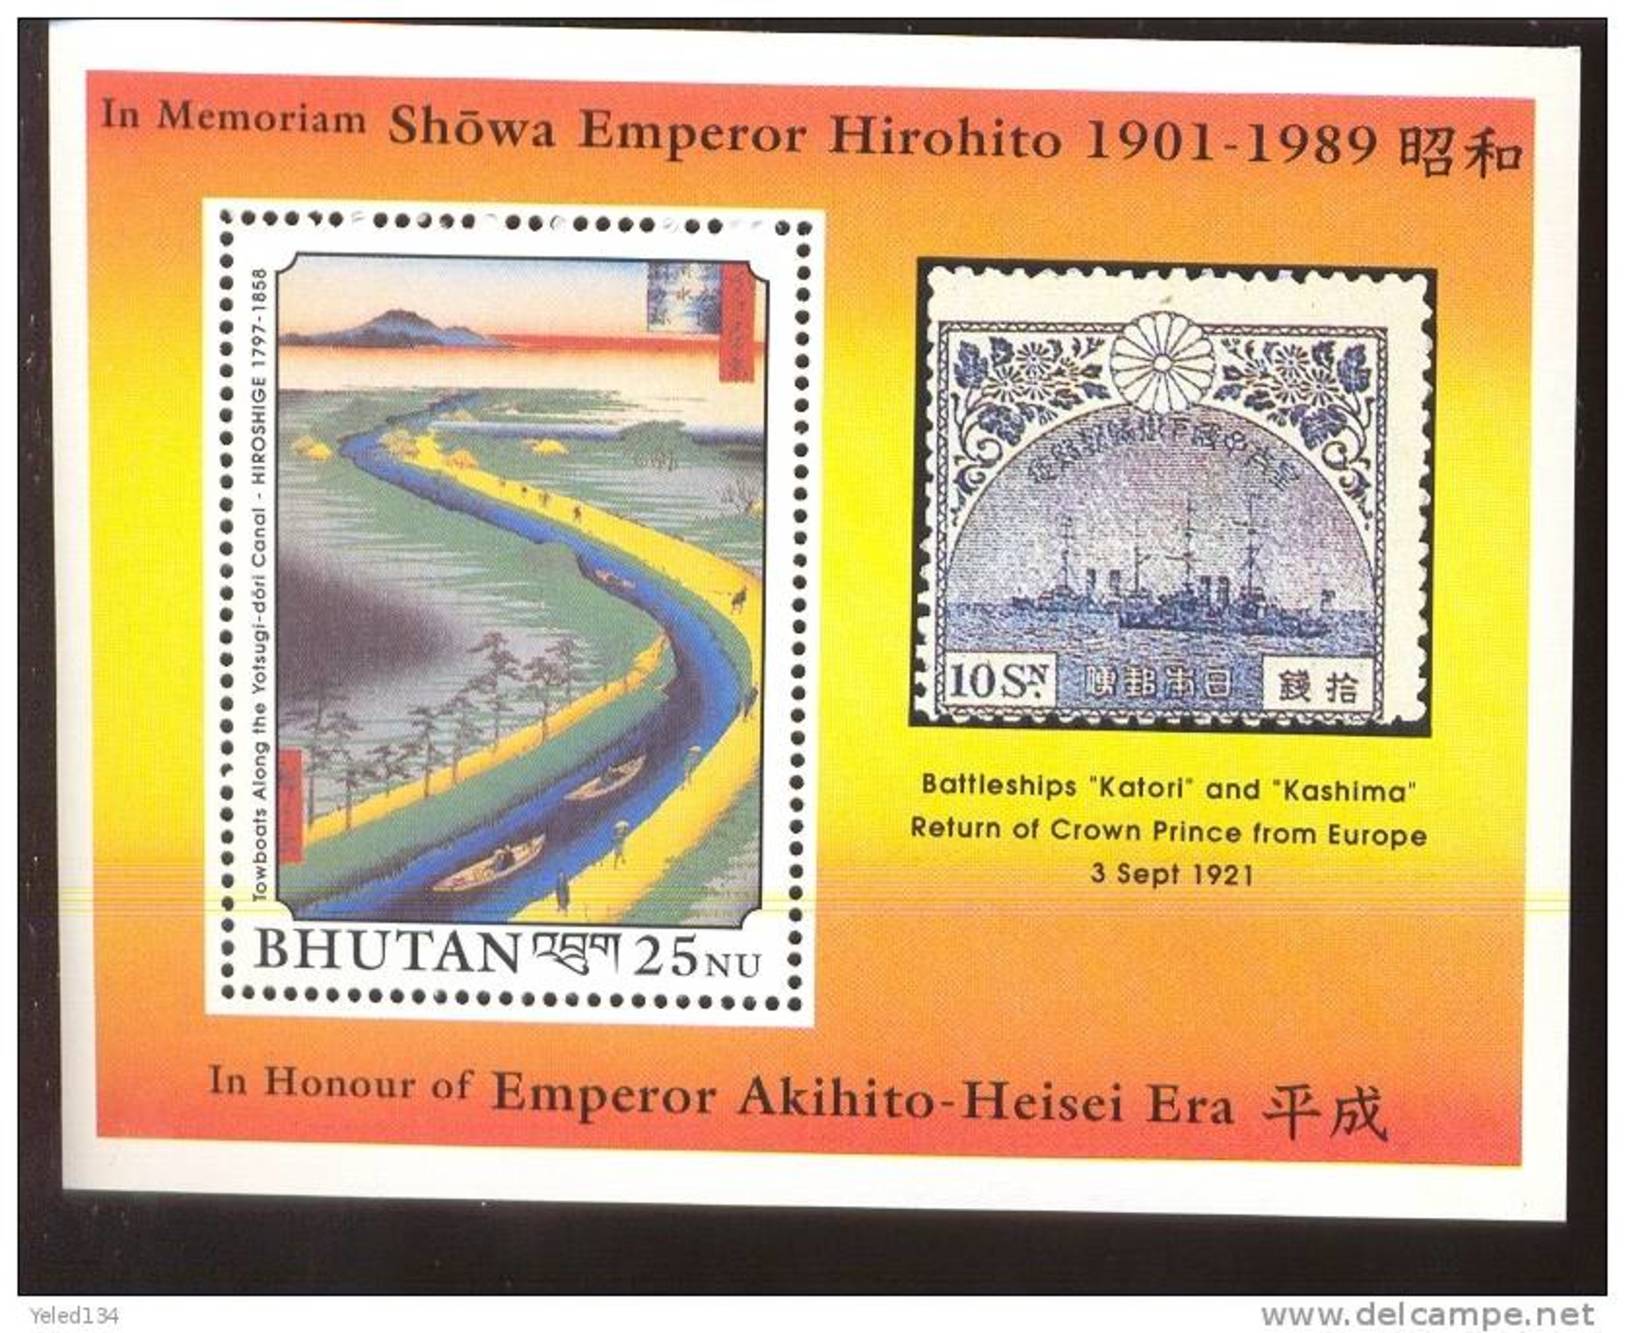 MNH BHUTAN # 858 : SOUVENIR SHEET ART HIROSHIGE EMPEROR HIROHITO AKIHITO HEISEI ERA - Bhoutan